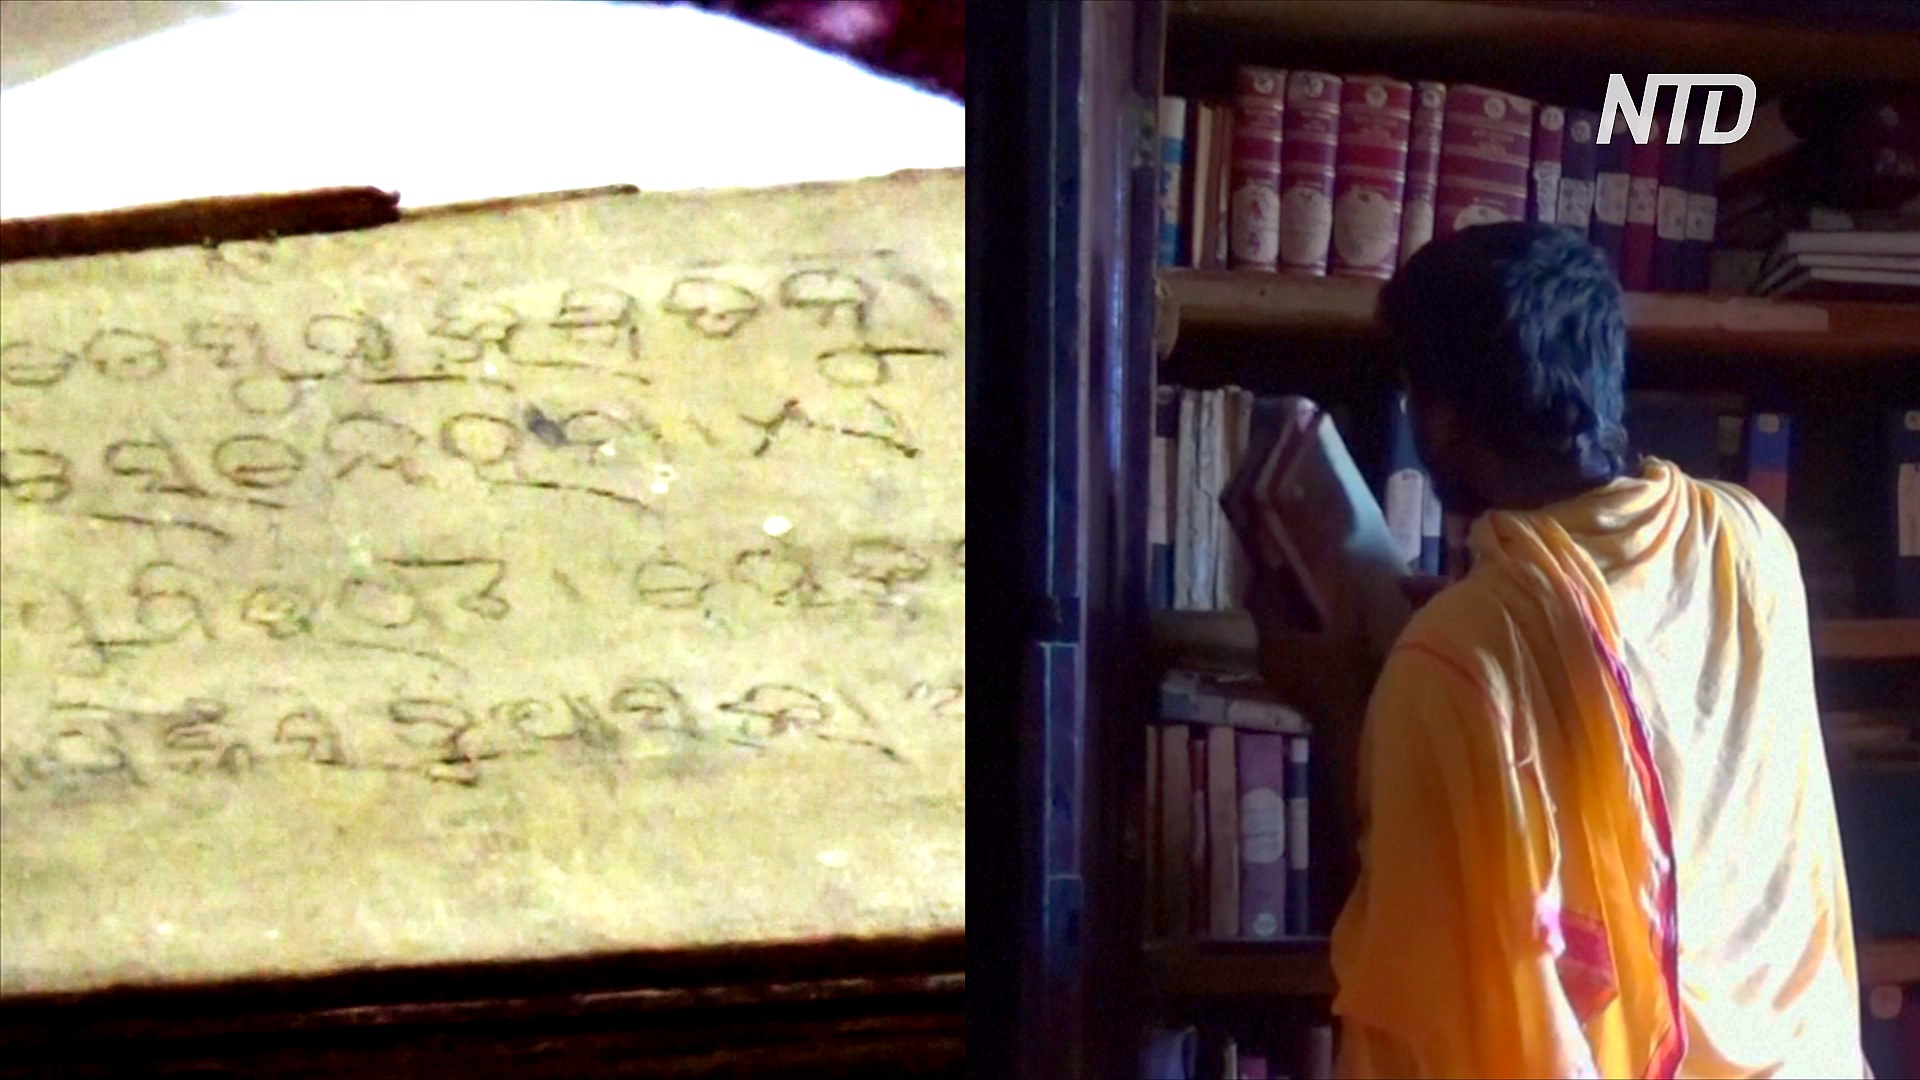 Где можно почитать оригиналы писаний возрастом 2500 лет